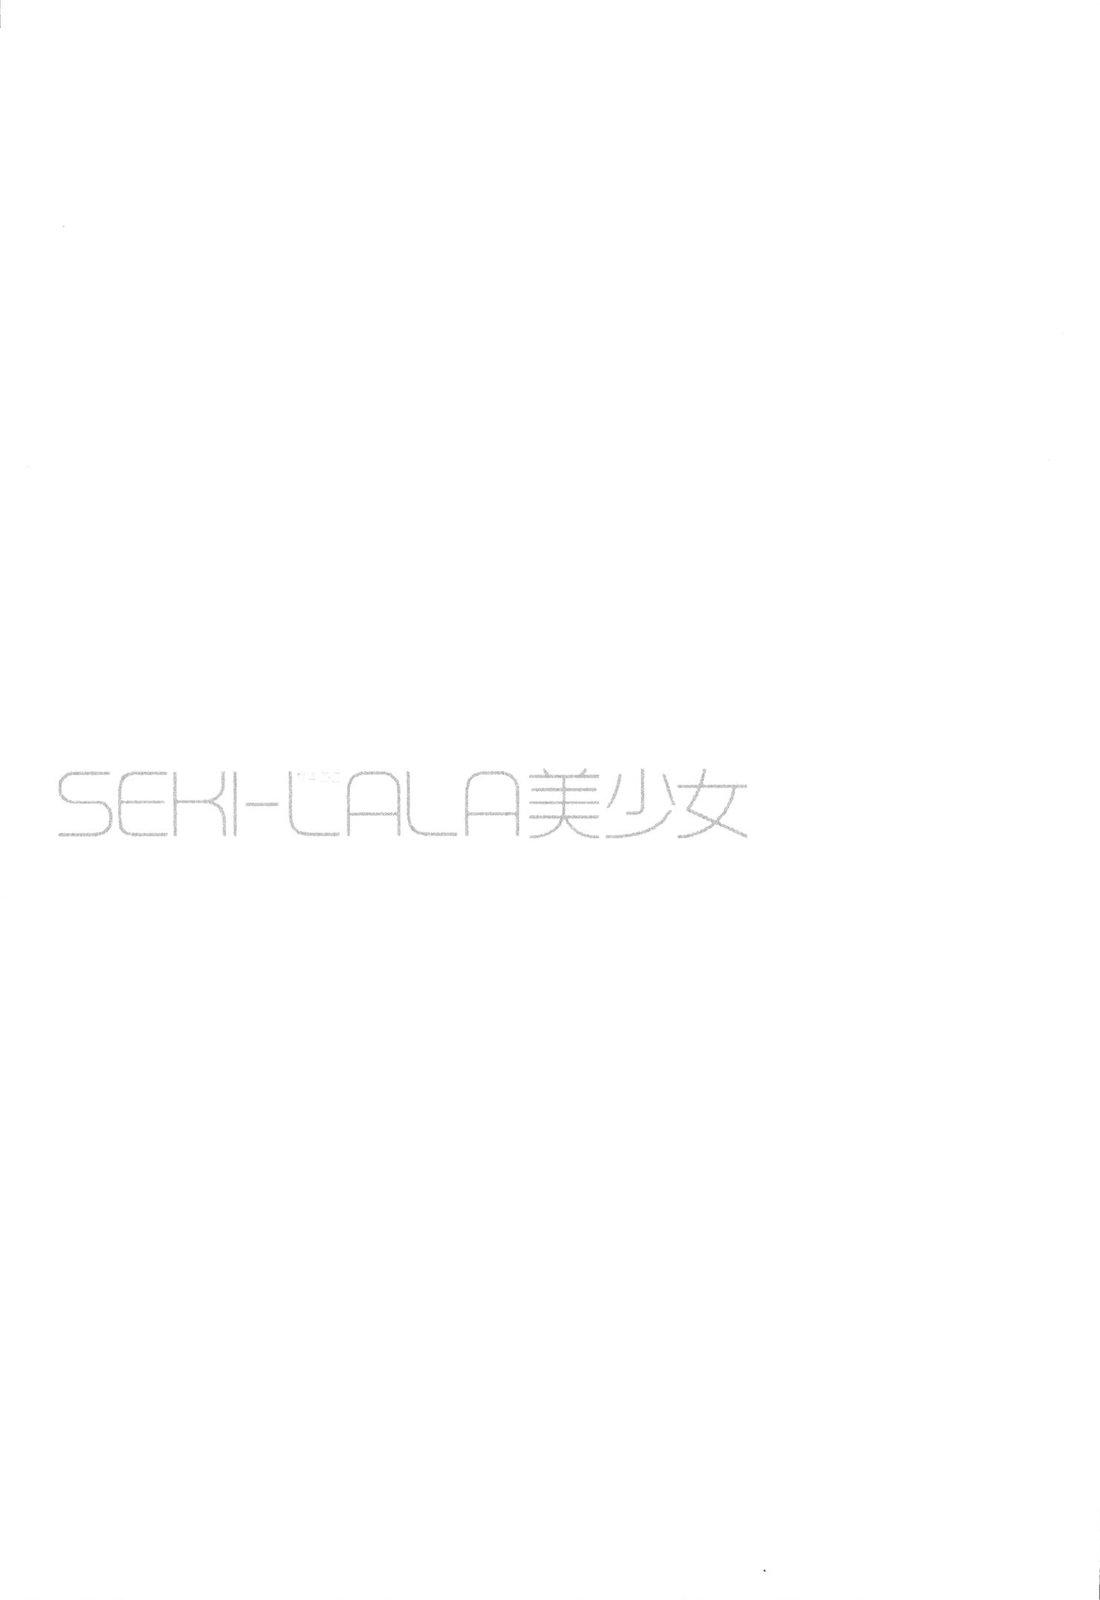 SEKI-LALA Bishoujo 139